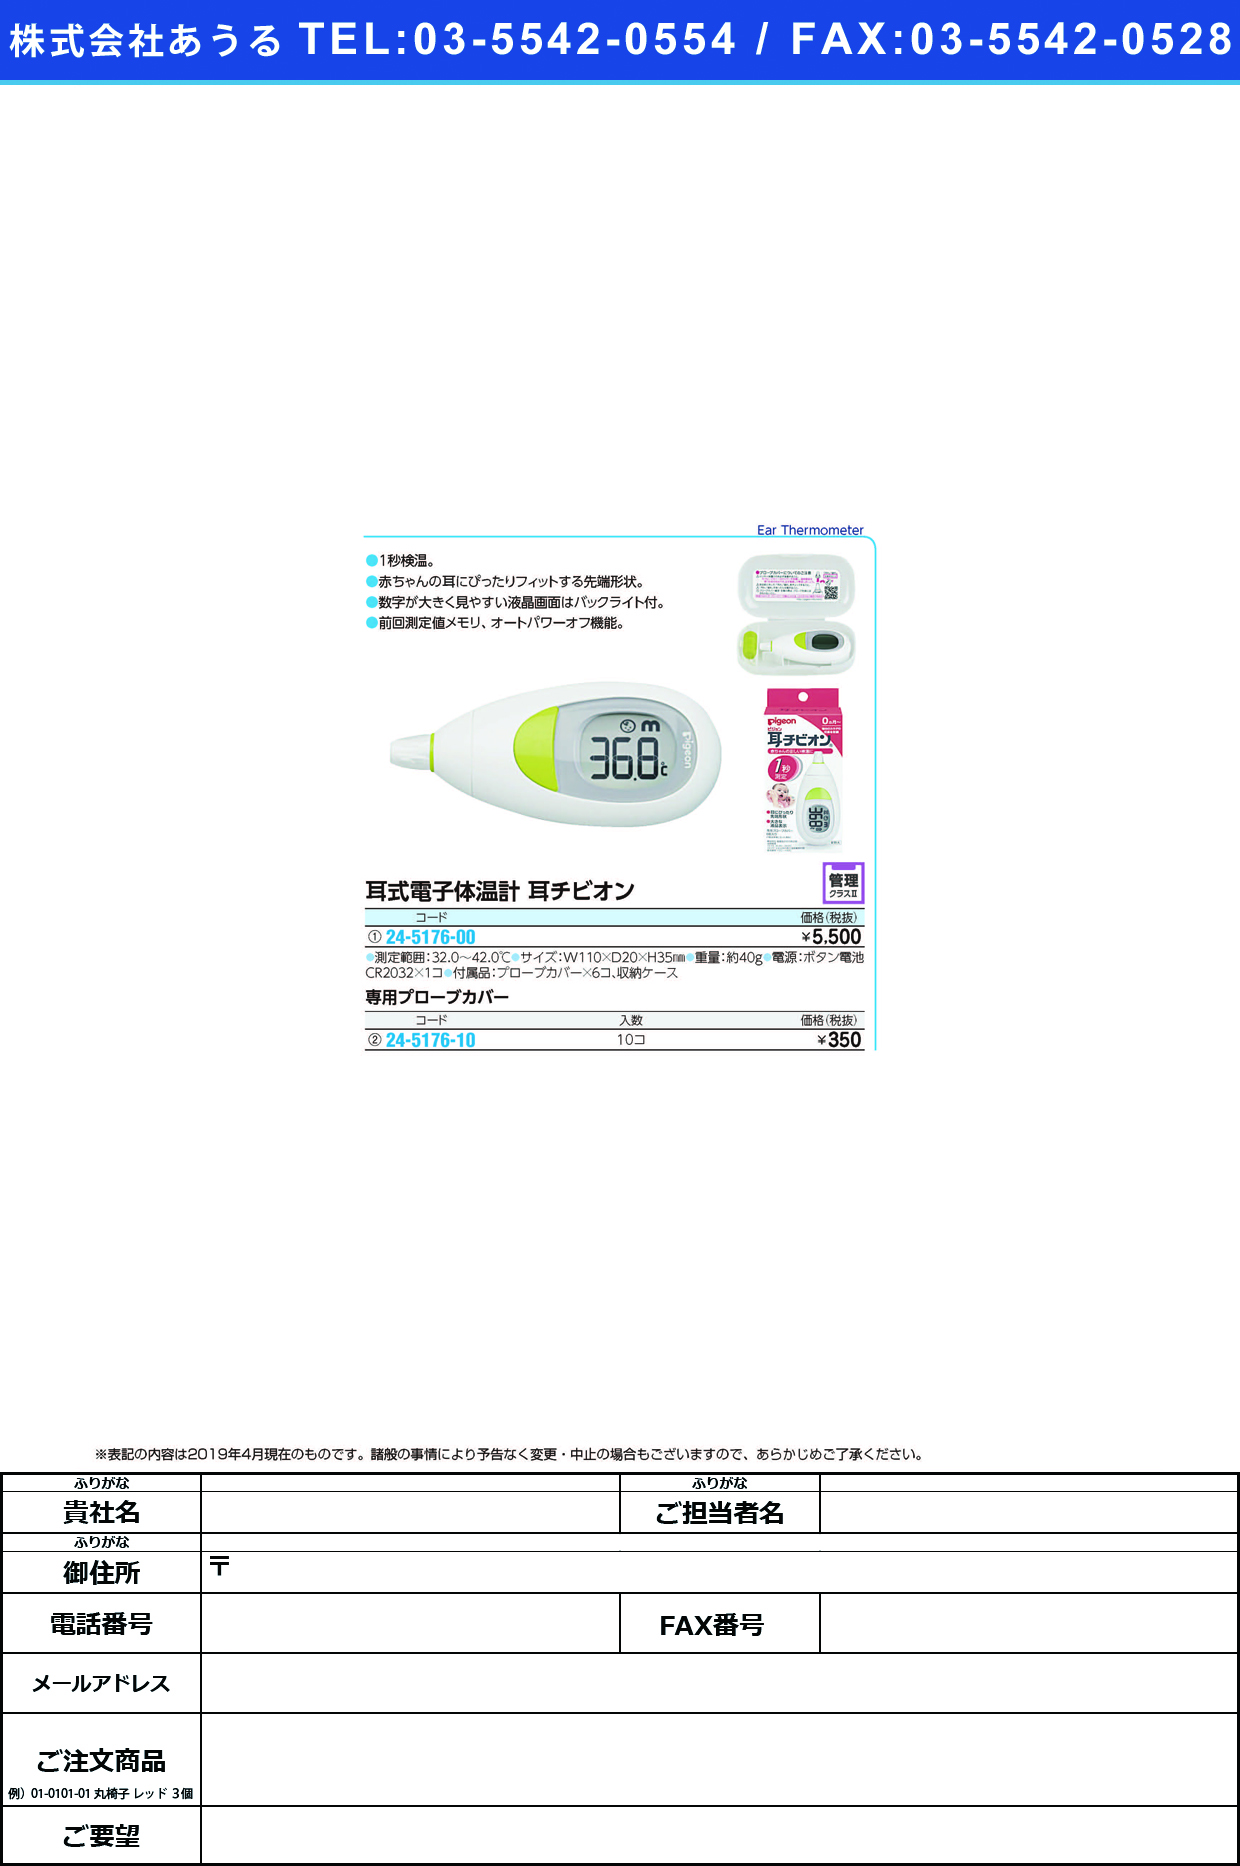 (24-5176-10)耳チビオン用プローブカバー 15133(10ｺｲﾘ) ﾐﾐﾁﾋﾞｵﾝﾖｳﾌﾟﾛｰﾌﾞｶﾊﾞｰ(ピジョン)【1個単位】【2019年カタログ商品】